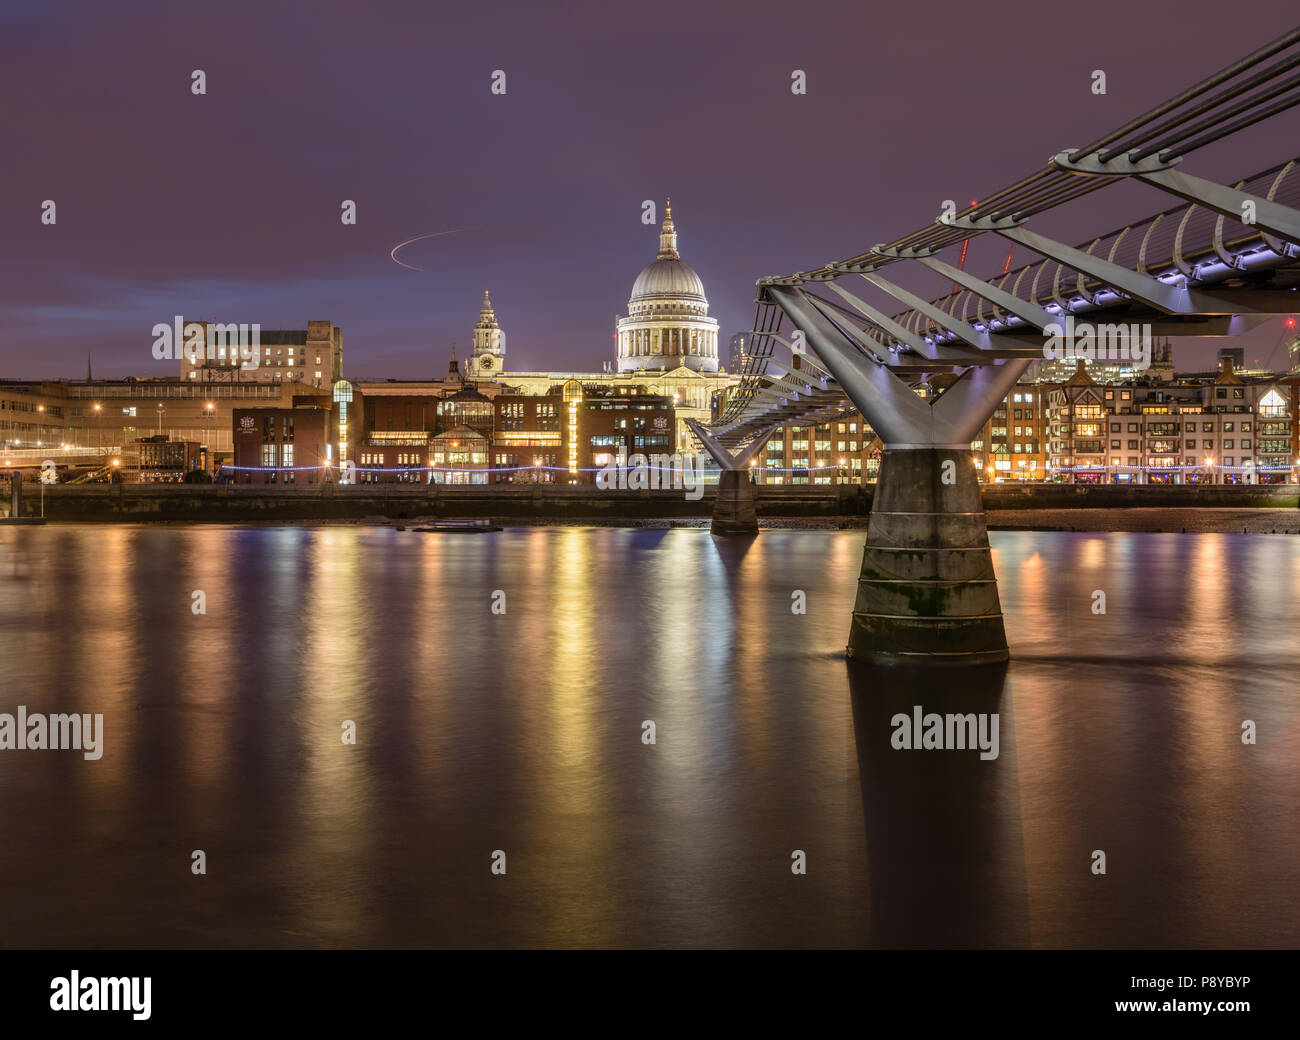 La larga exposición con vistas al paisaje de la Catedral de San Pablo y el Puente del Milenio de Londres por la noche con las luces reflejadas en el río Támesis Foto de stock